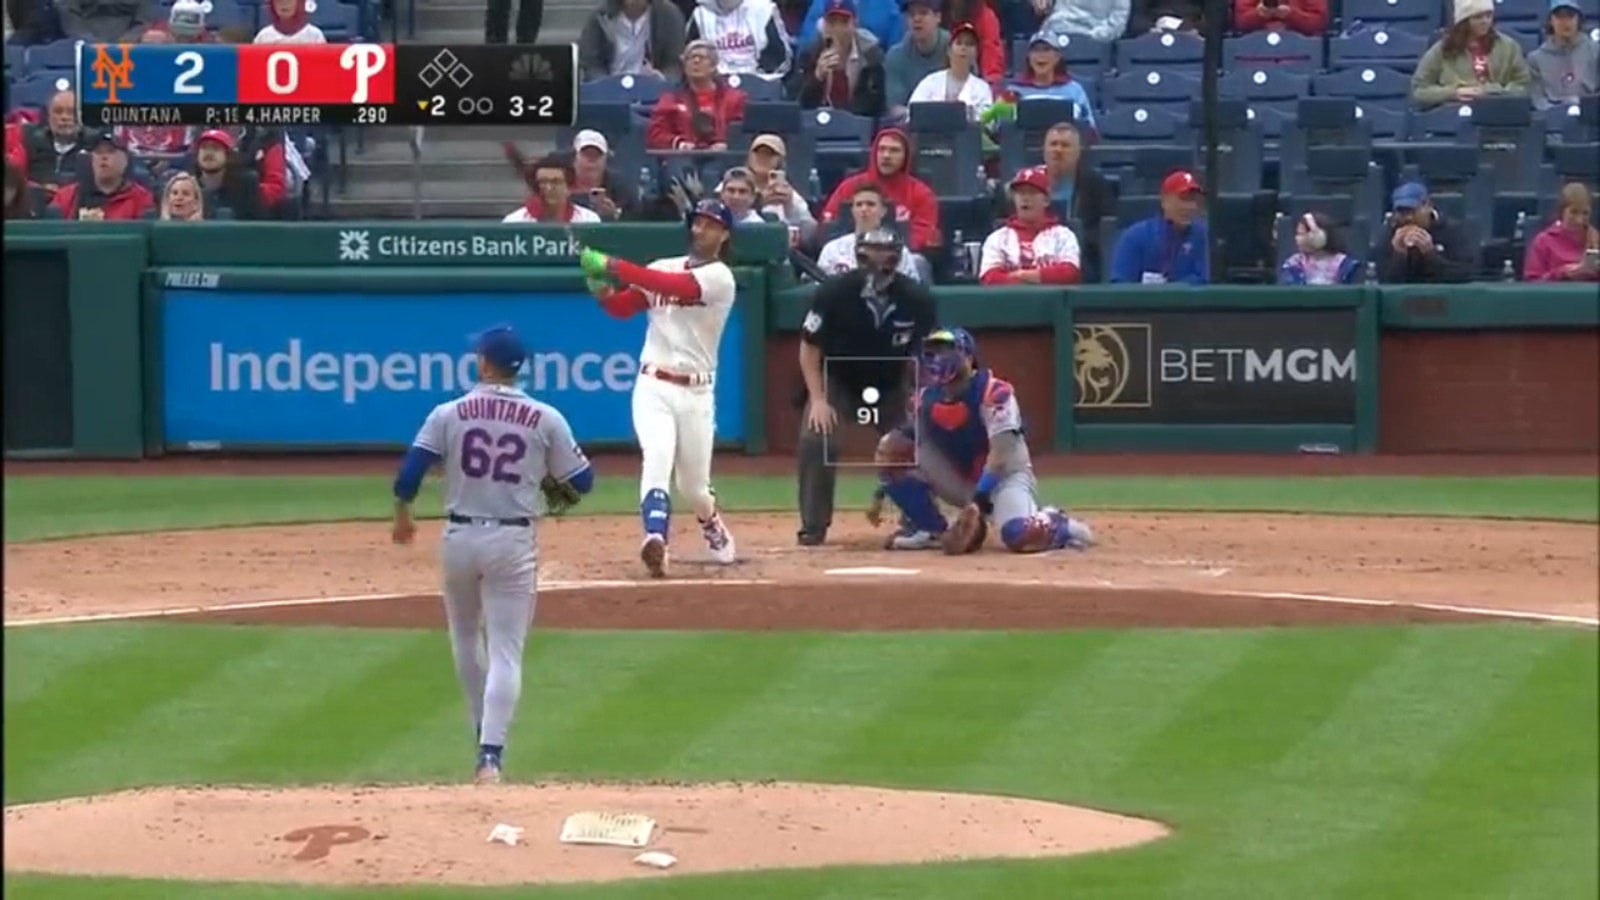 Bryce Harper CRUSHES 451-foot homer as Phillies tie game against Mets